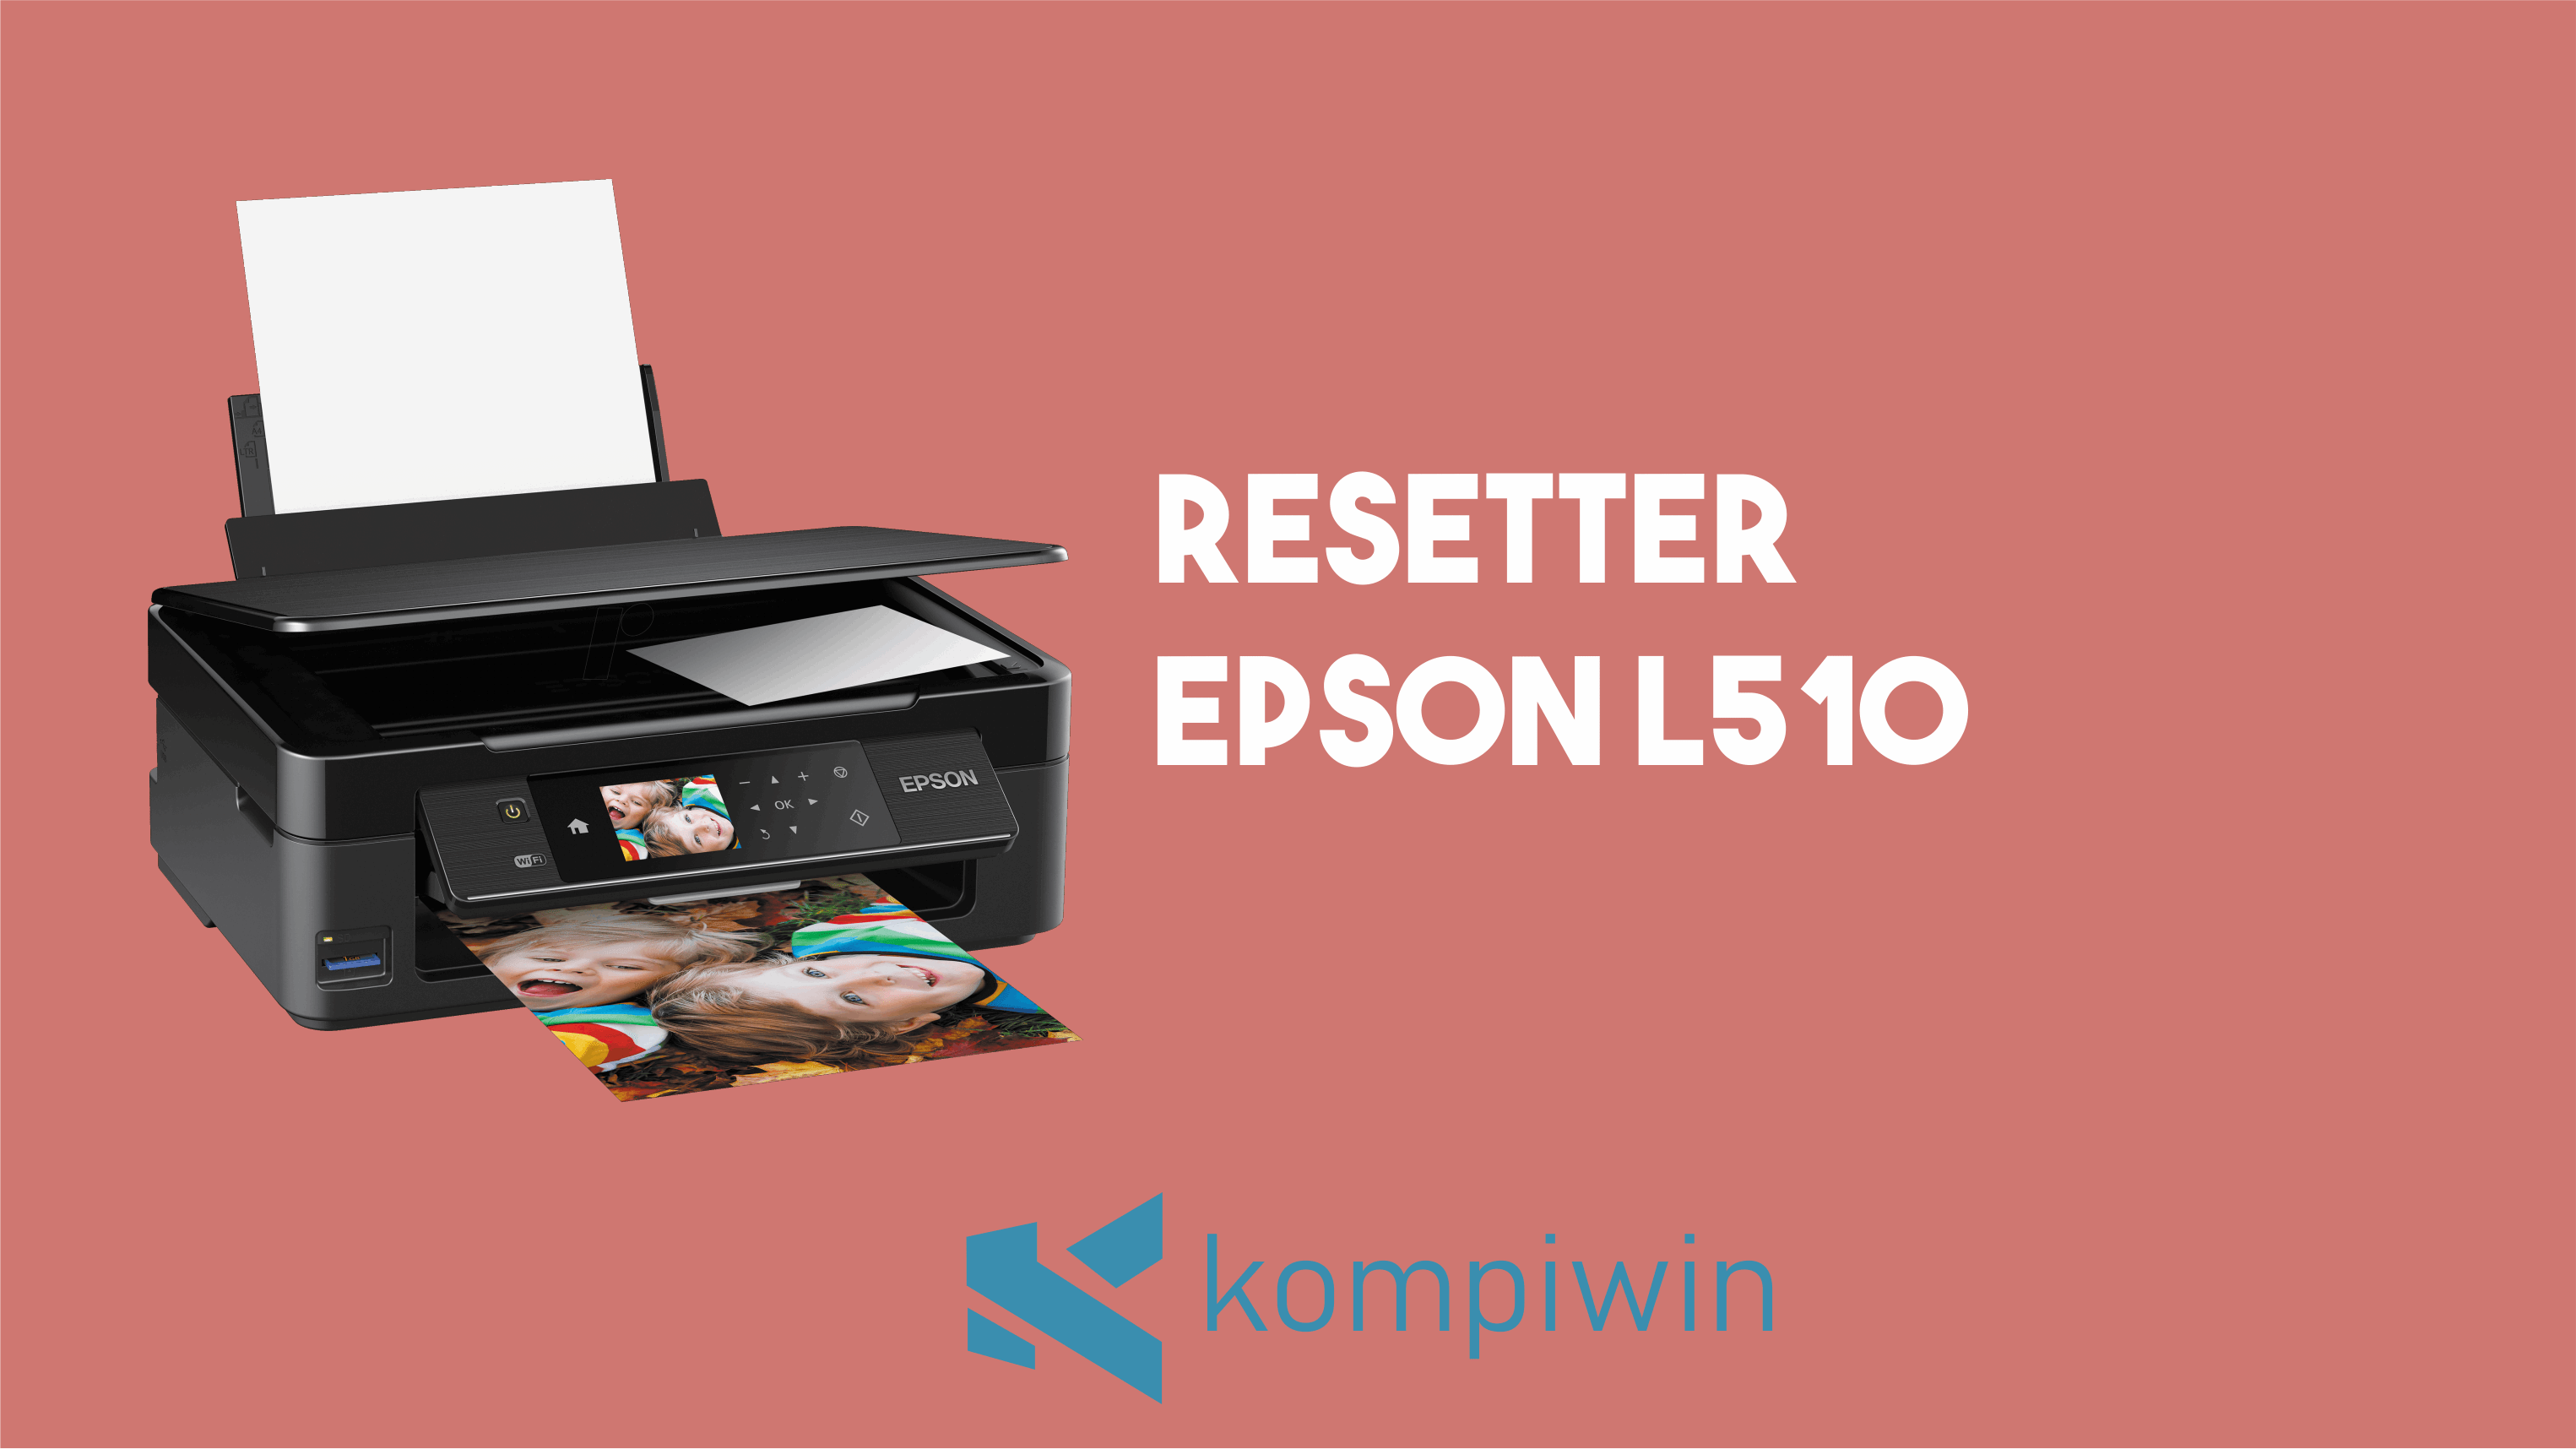 Resetter Epson L510